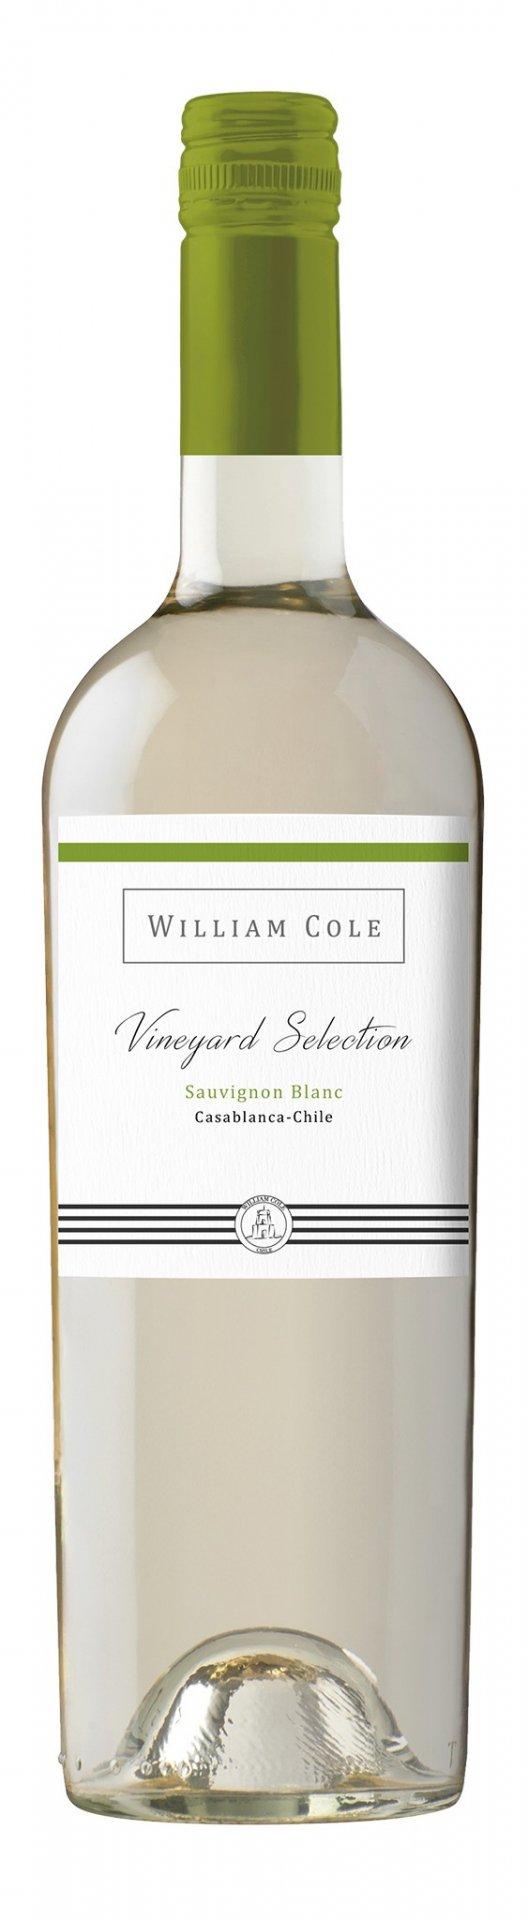 William Cole Vineyard Selection Sauvignon